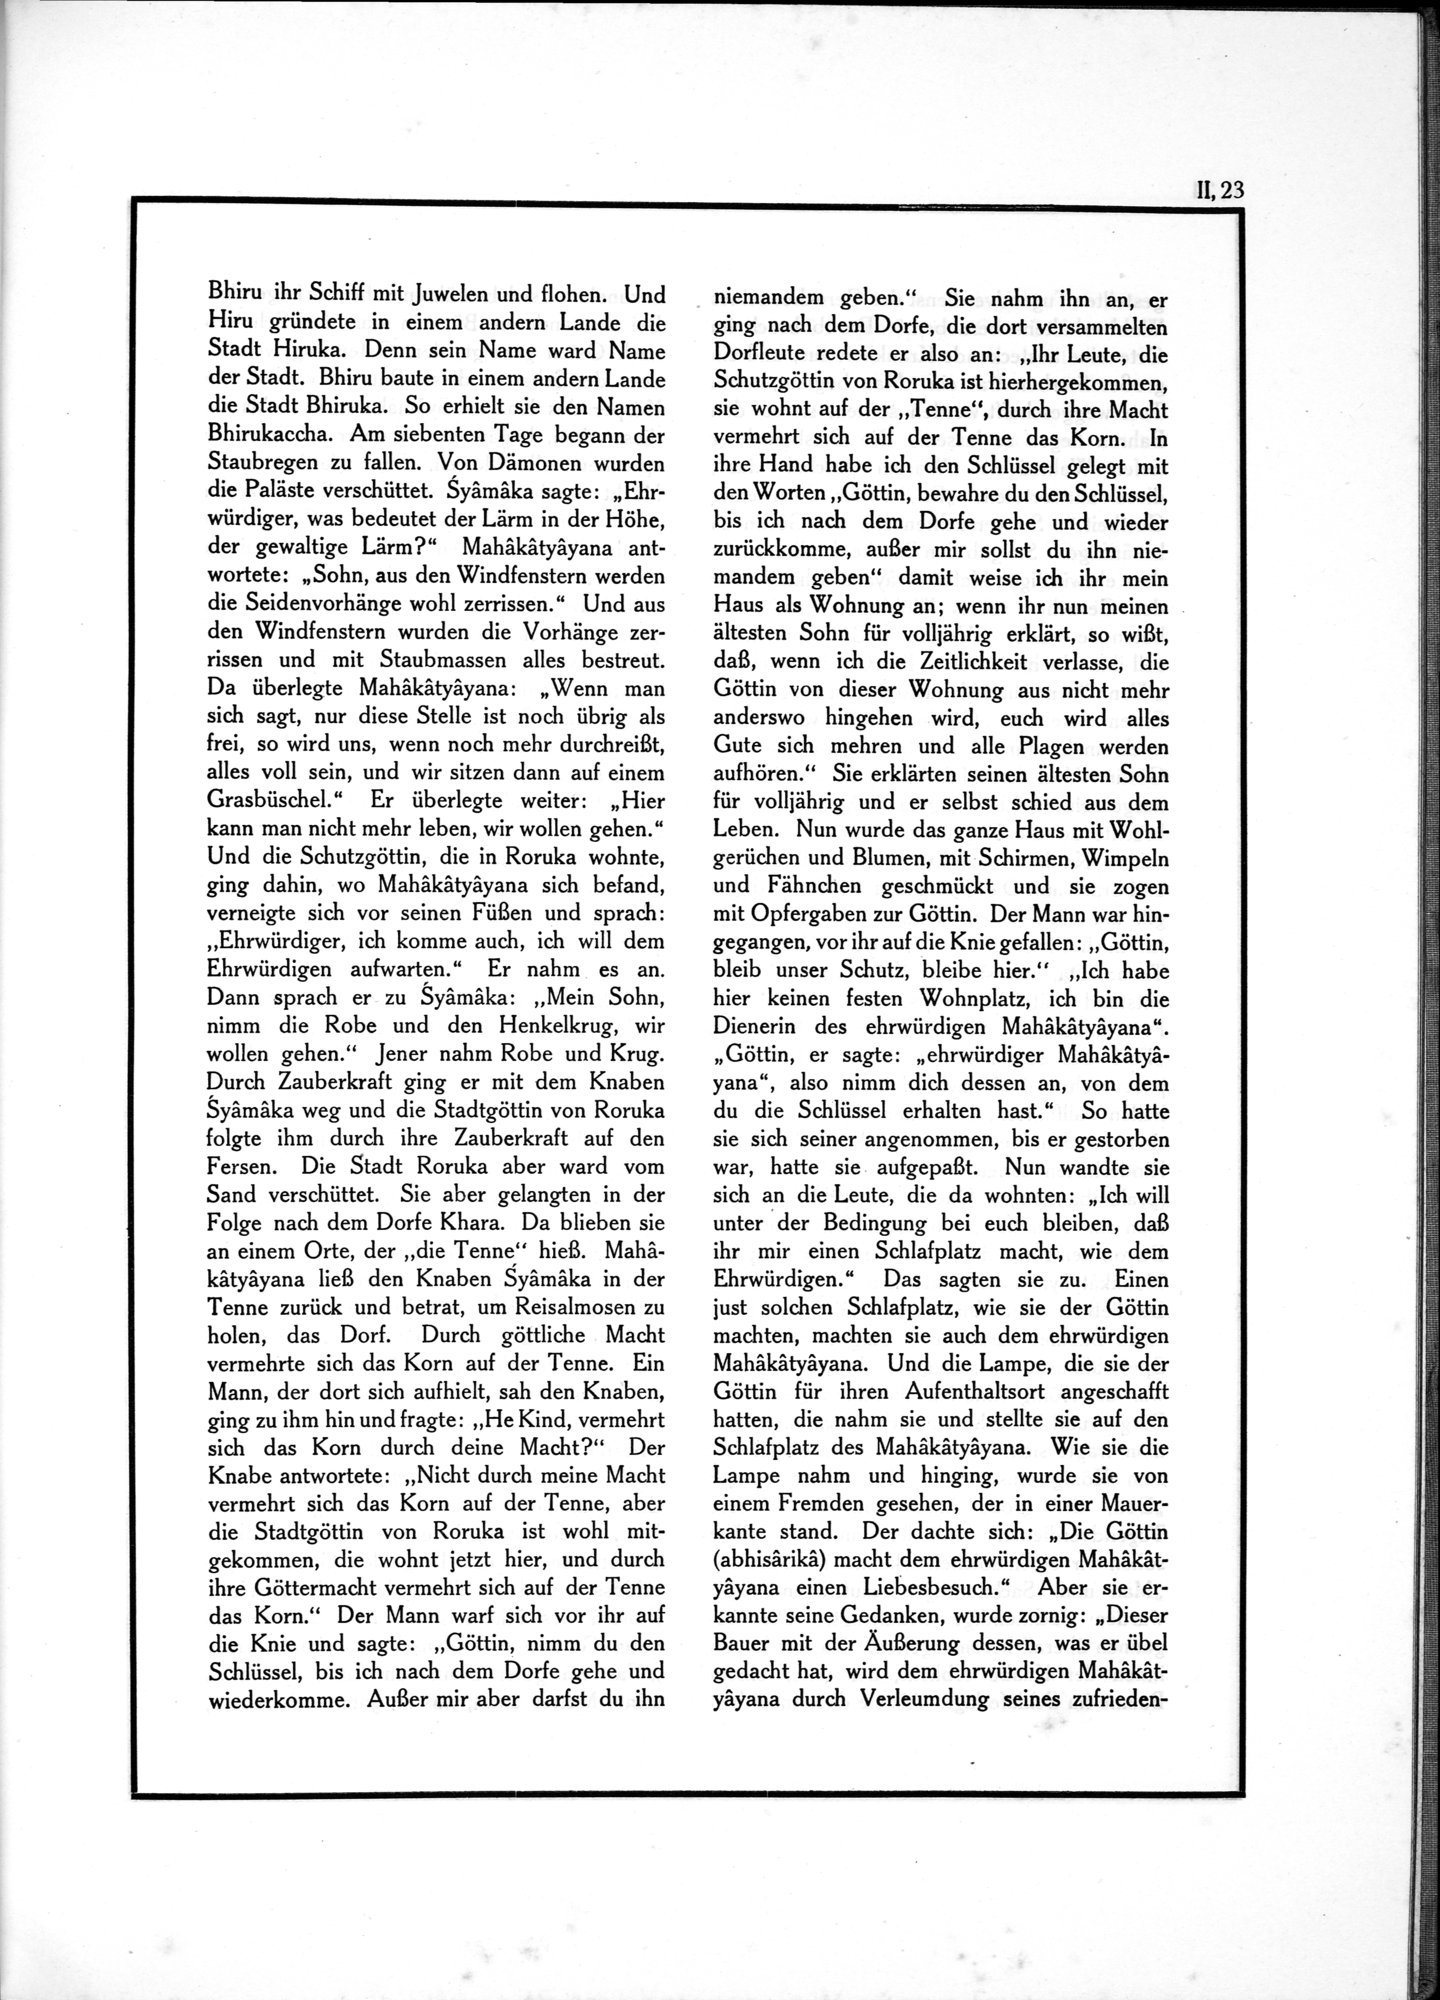 Die Teufel des Avesta und Ihre Beziehungen zur Ikonographie des Buddhismus Zentral-Asiens : vol.1 / Page 479 (Grayscale High Resolution Image)